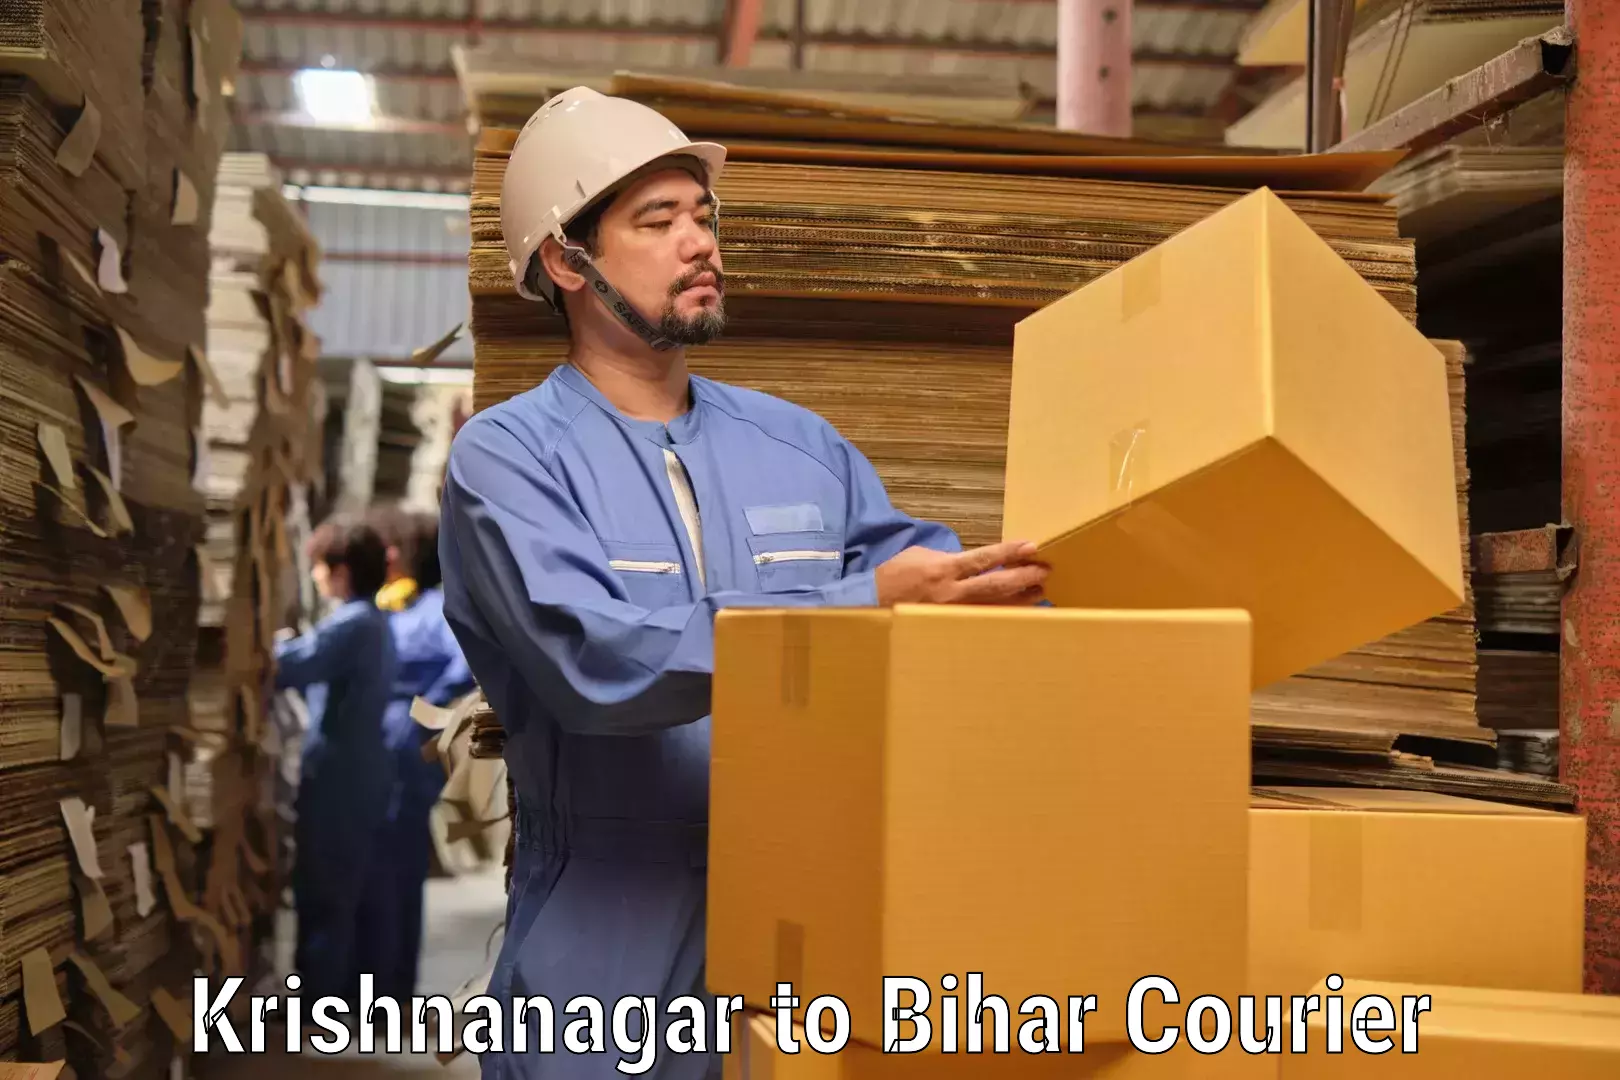 Lightweight courier Krishnanagar to Sandesh